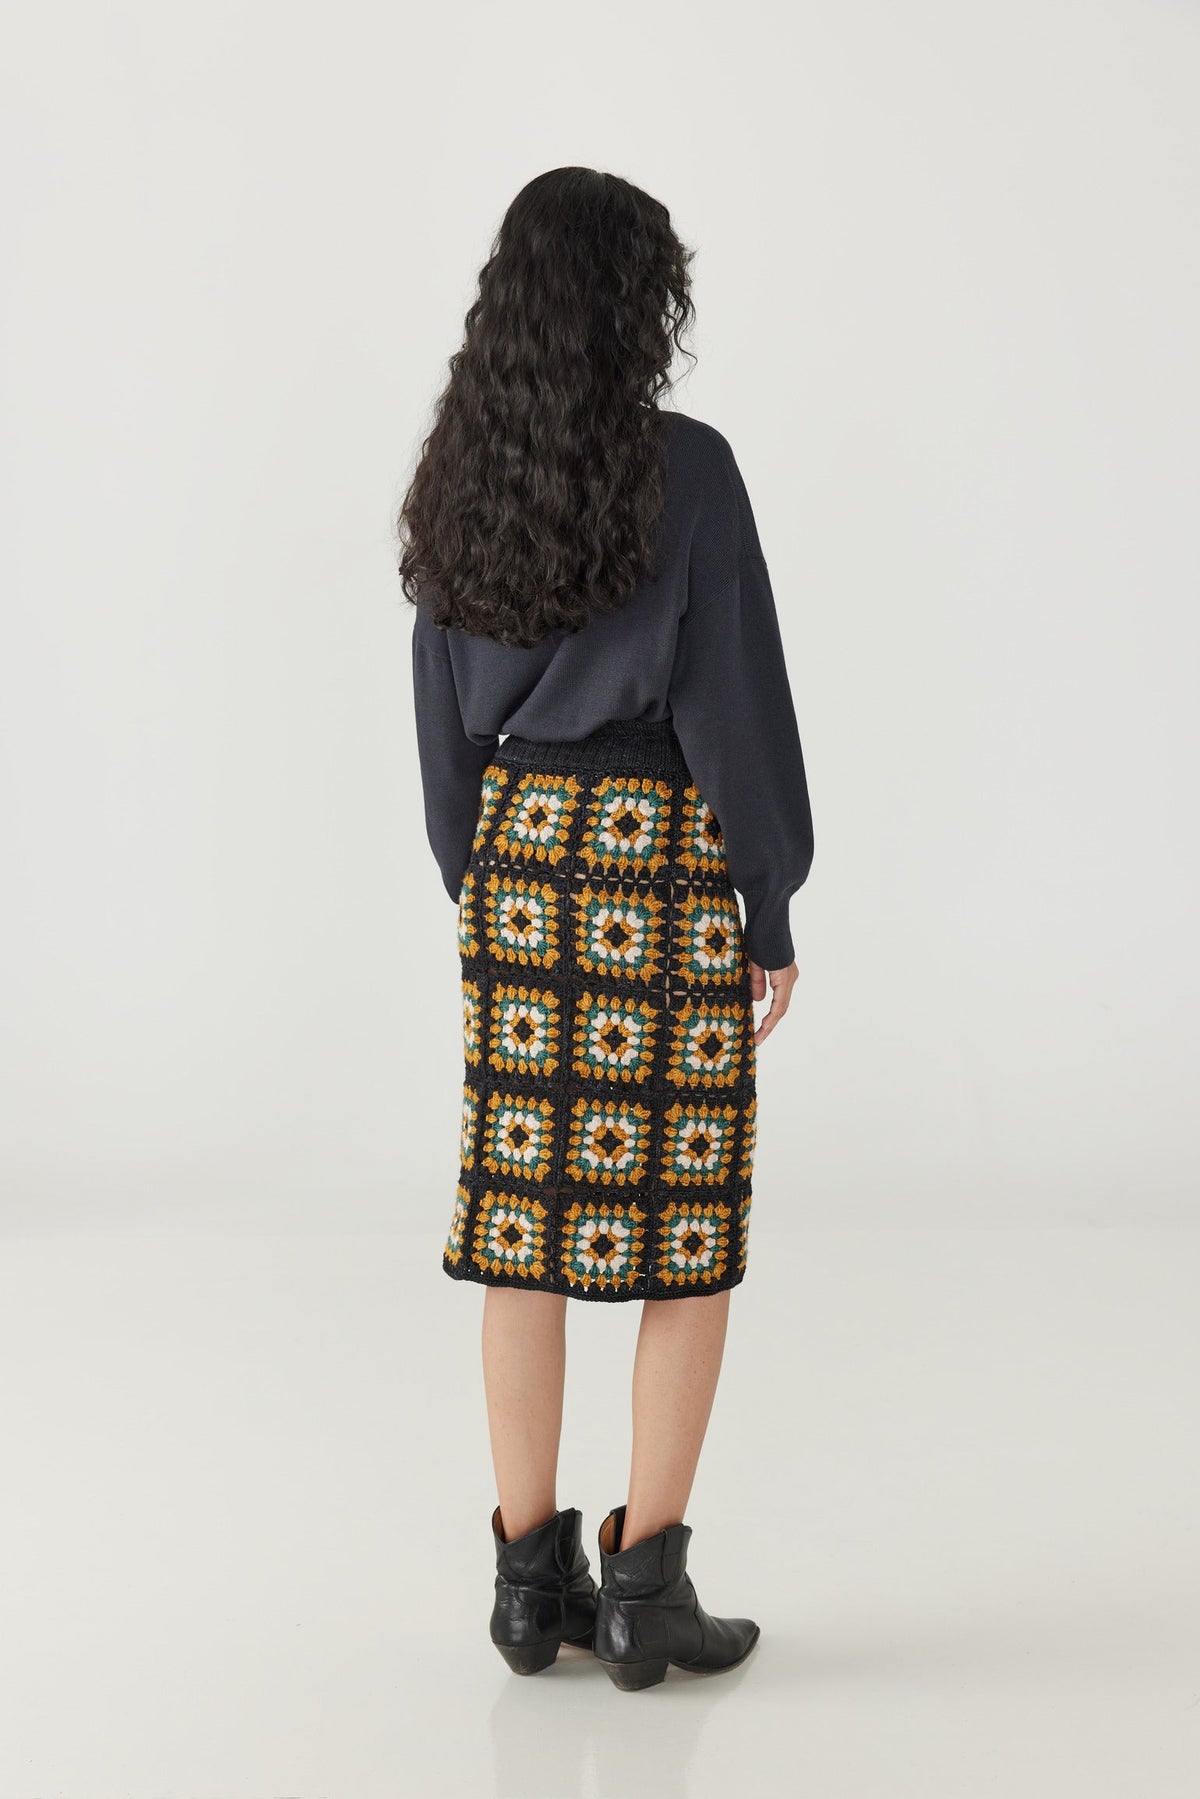 Adult Patchwork Crochet Skirt - Carbon+Model is 5&#39;9&quot; | 31&quot; Bust | 24&quot; Waist | 34&quot; Hips | size 2, wearing a size One Size